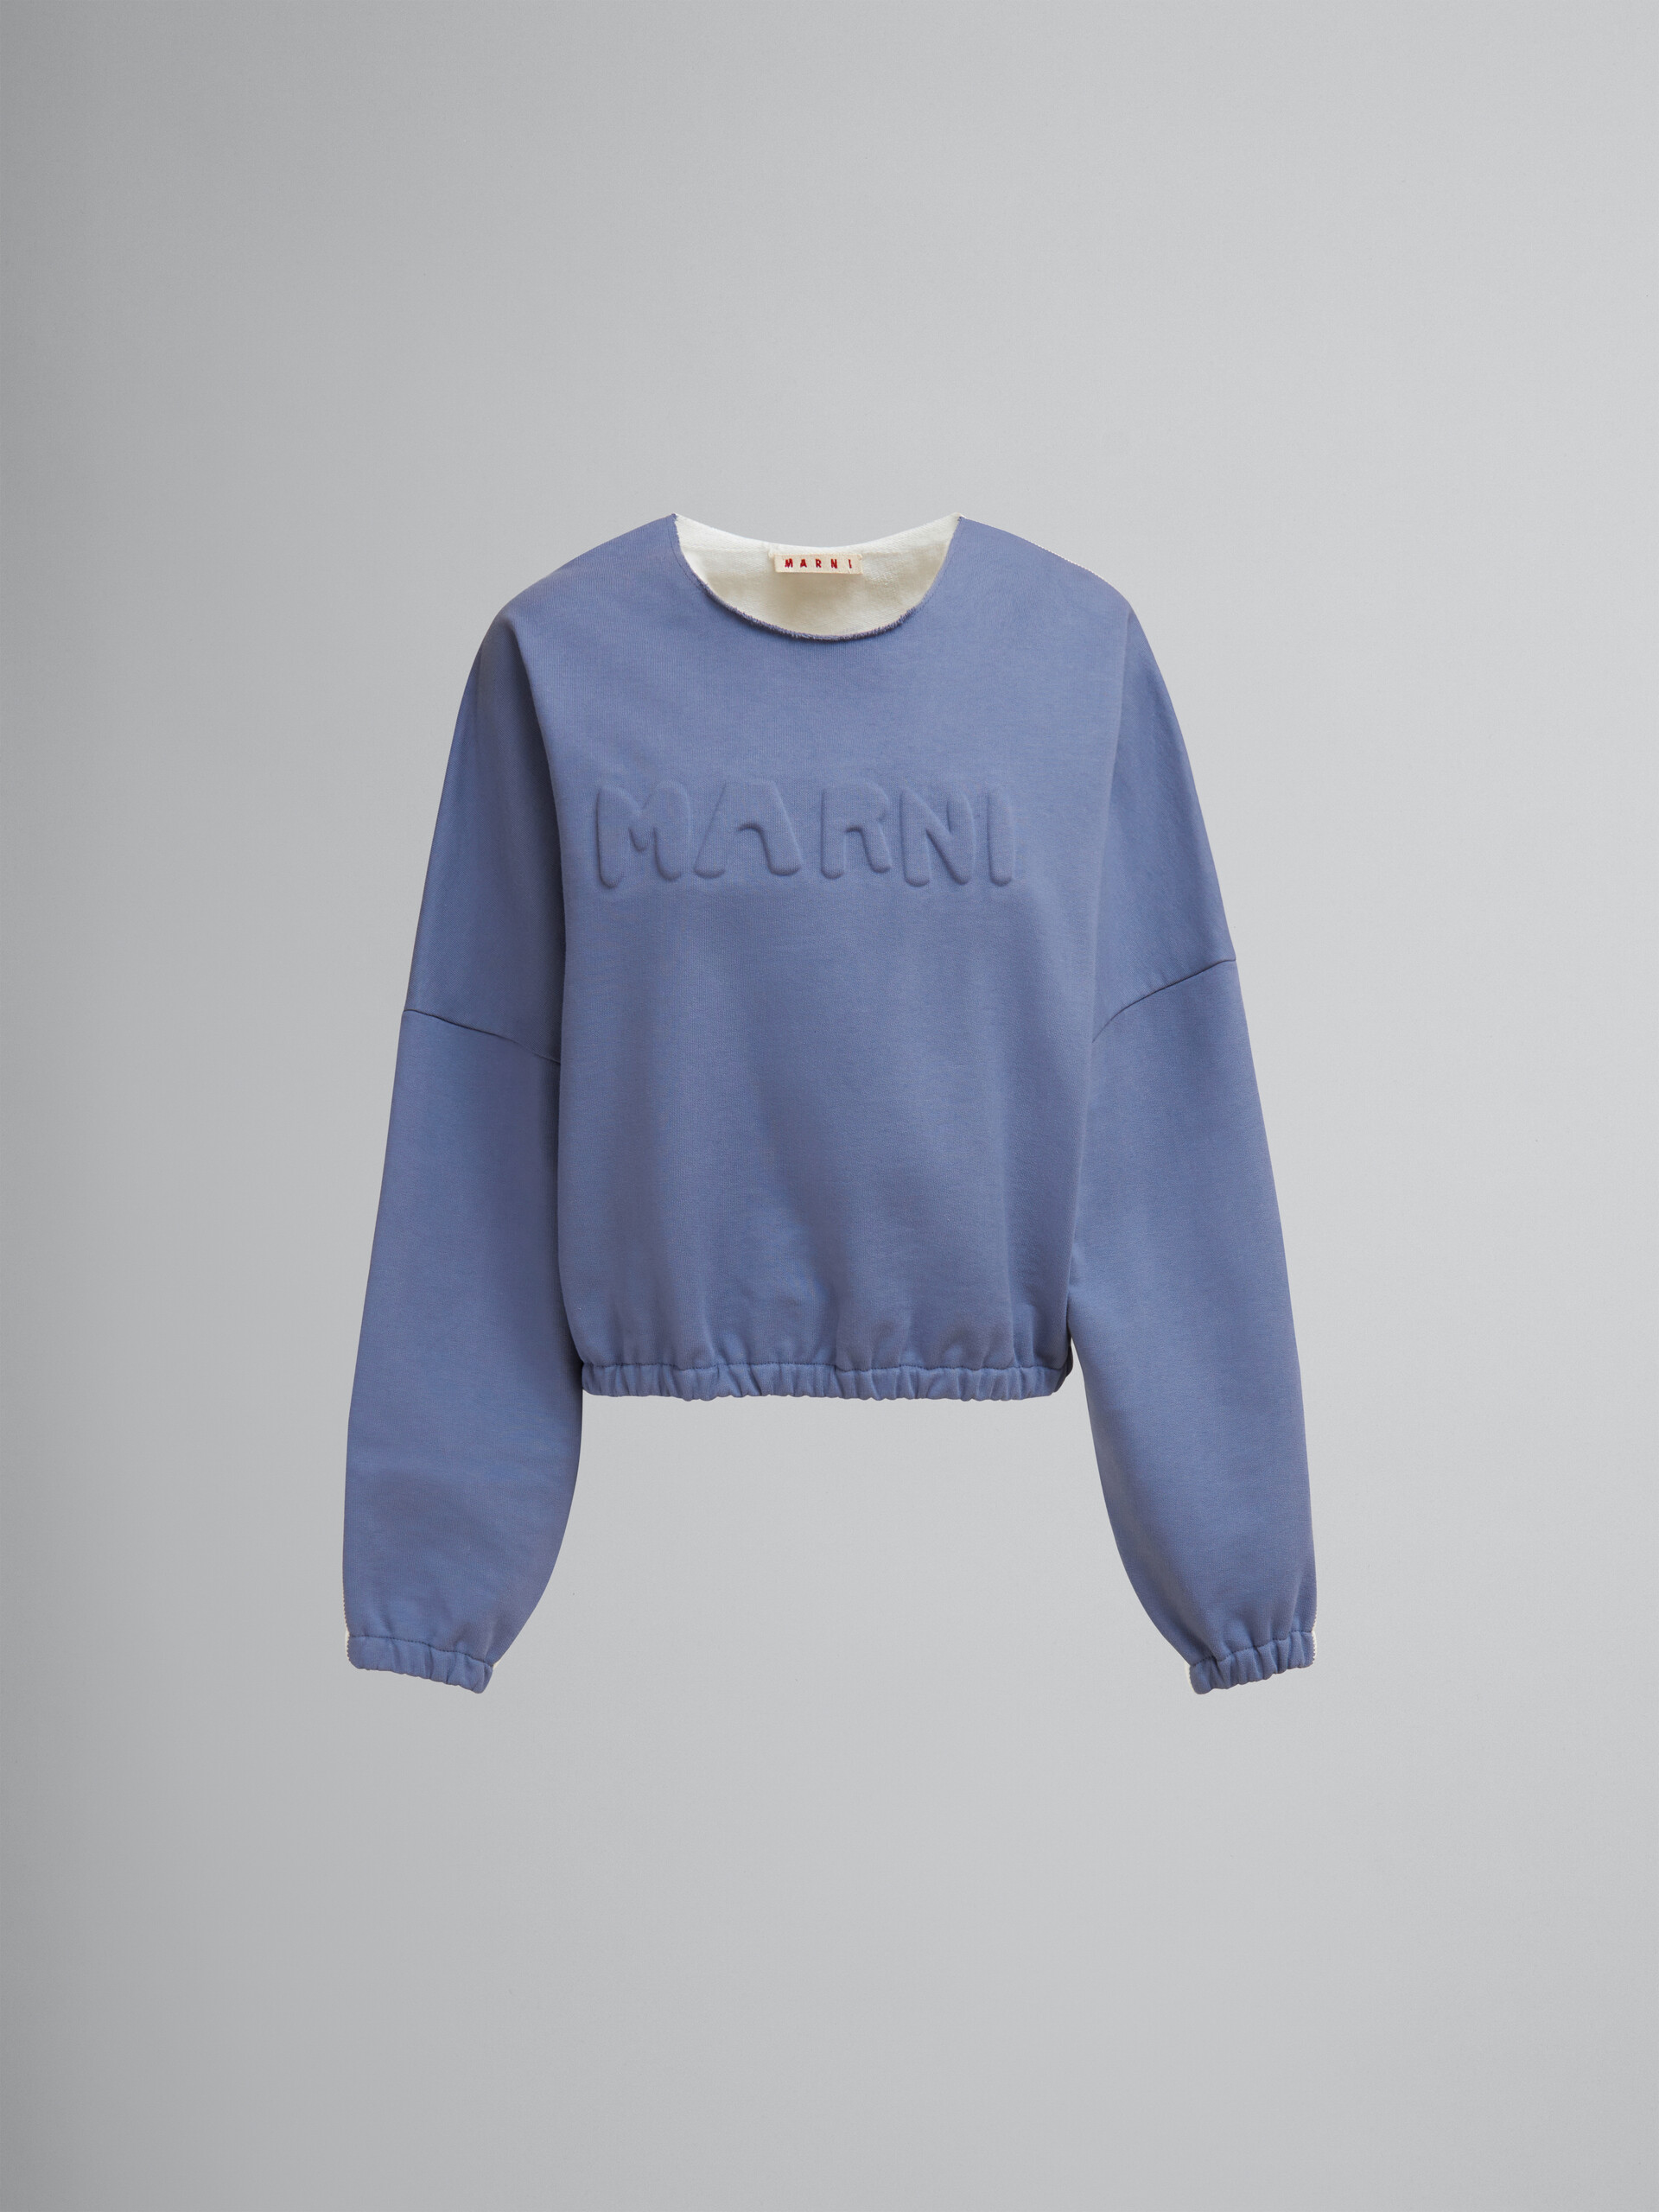 Sudadera azul de algodón orgánico con logotipo acolchado - jerseys - Image 1